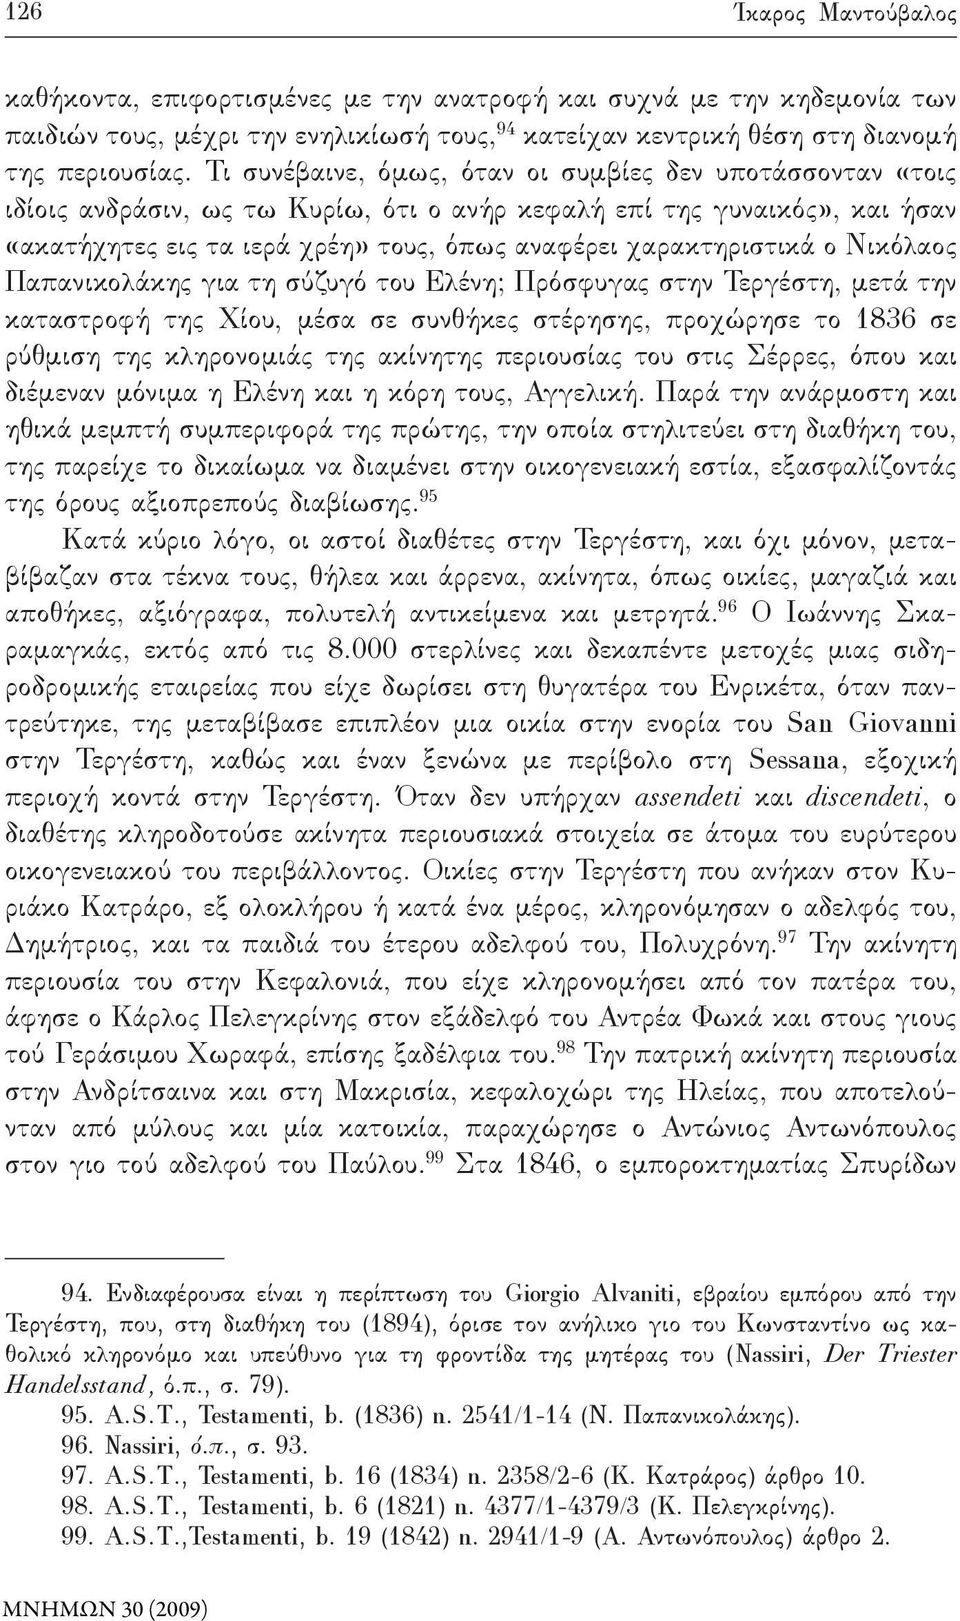 ο Νικόλαος Παπανικολάκης για τη σύζυγό του Ελένη; Πρόσφυγας στην Τεργέστη, μετά την καταστροφή της Χίου, μέσα σε συνθήκες στέρησης, προχώρησε το 1836 σε ρύθμιση της κληρονομιάς της ακίνητης